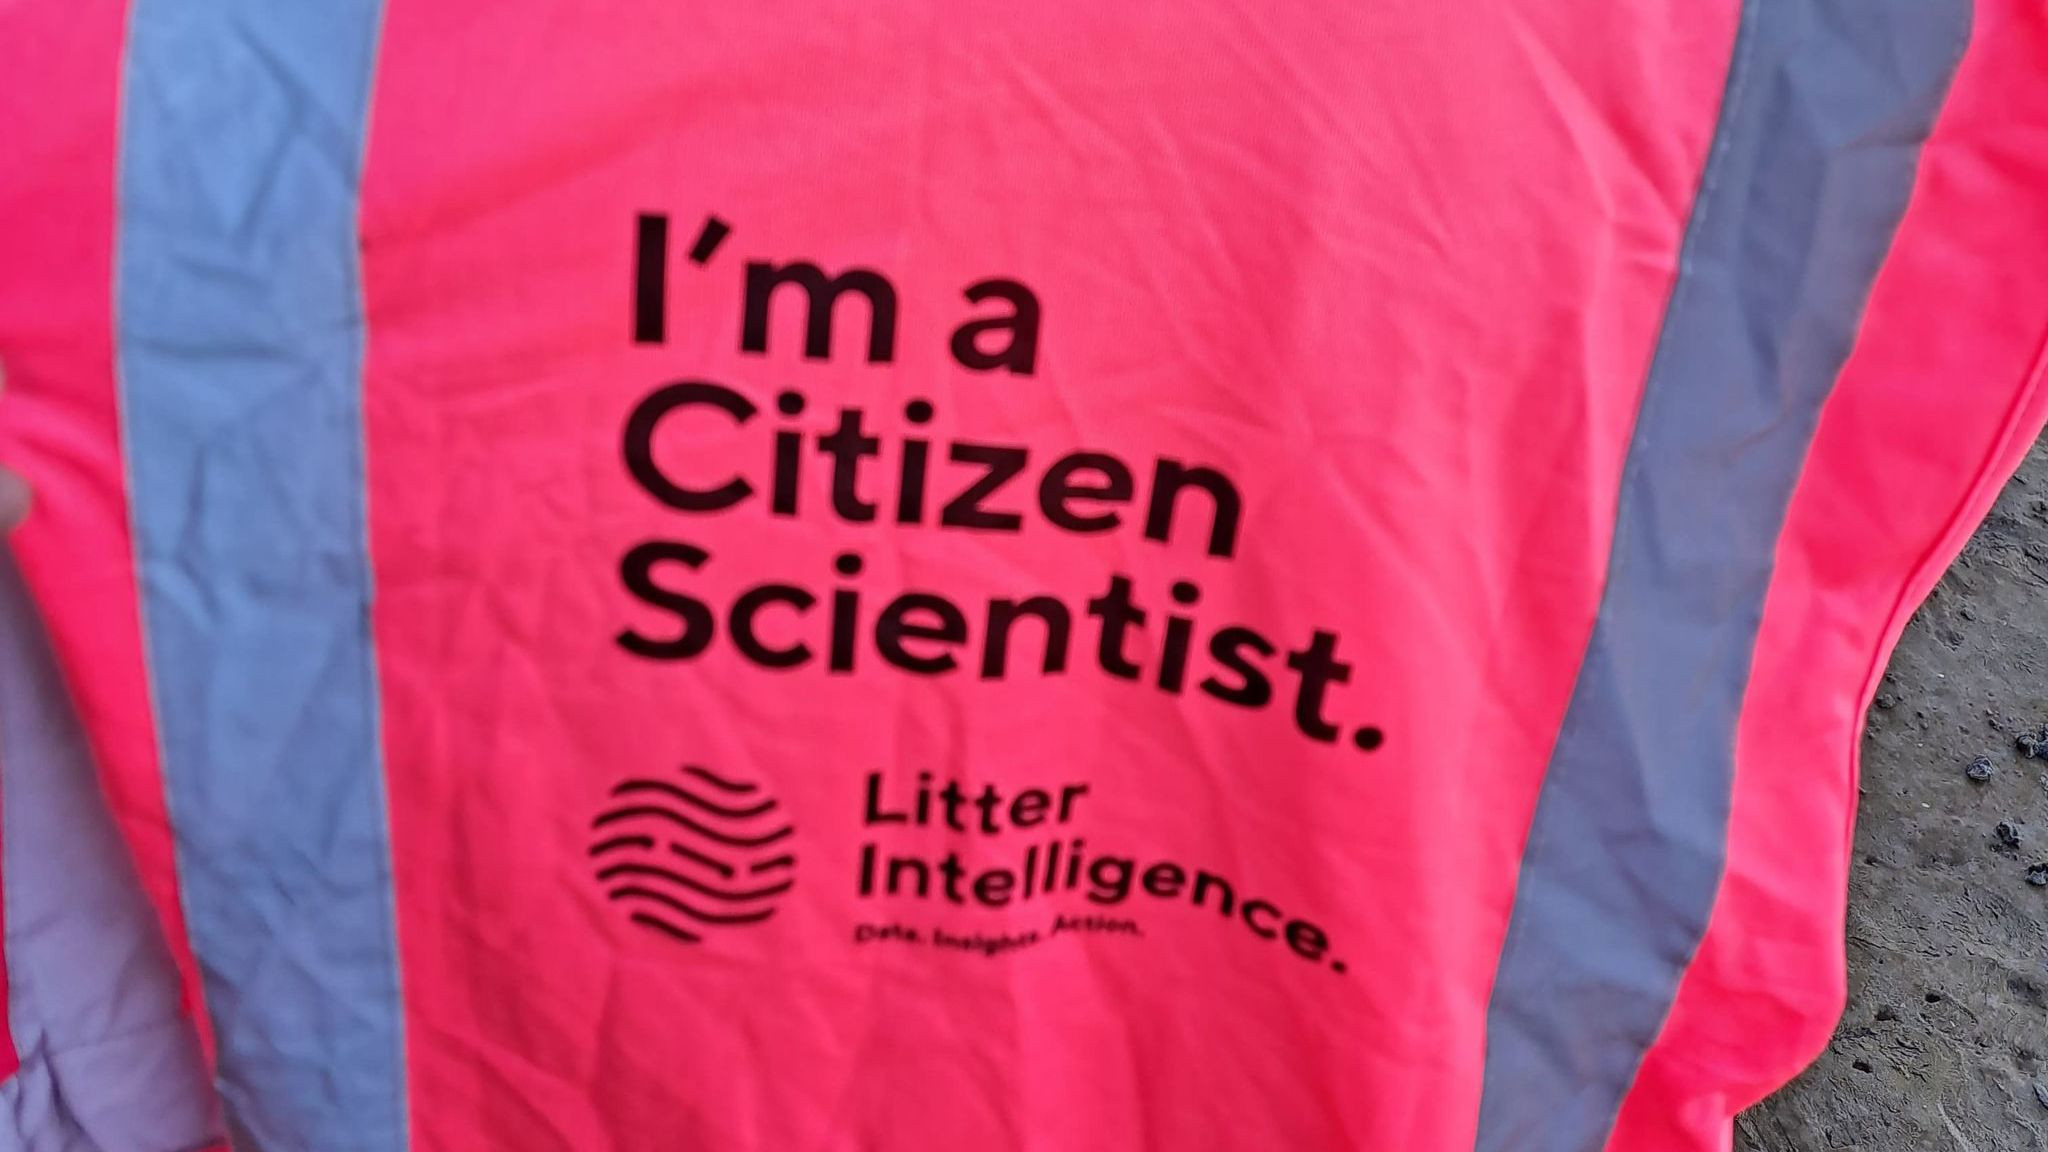 The Litter Intelligence Program